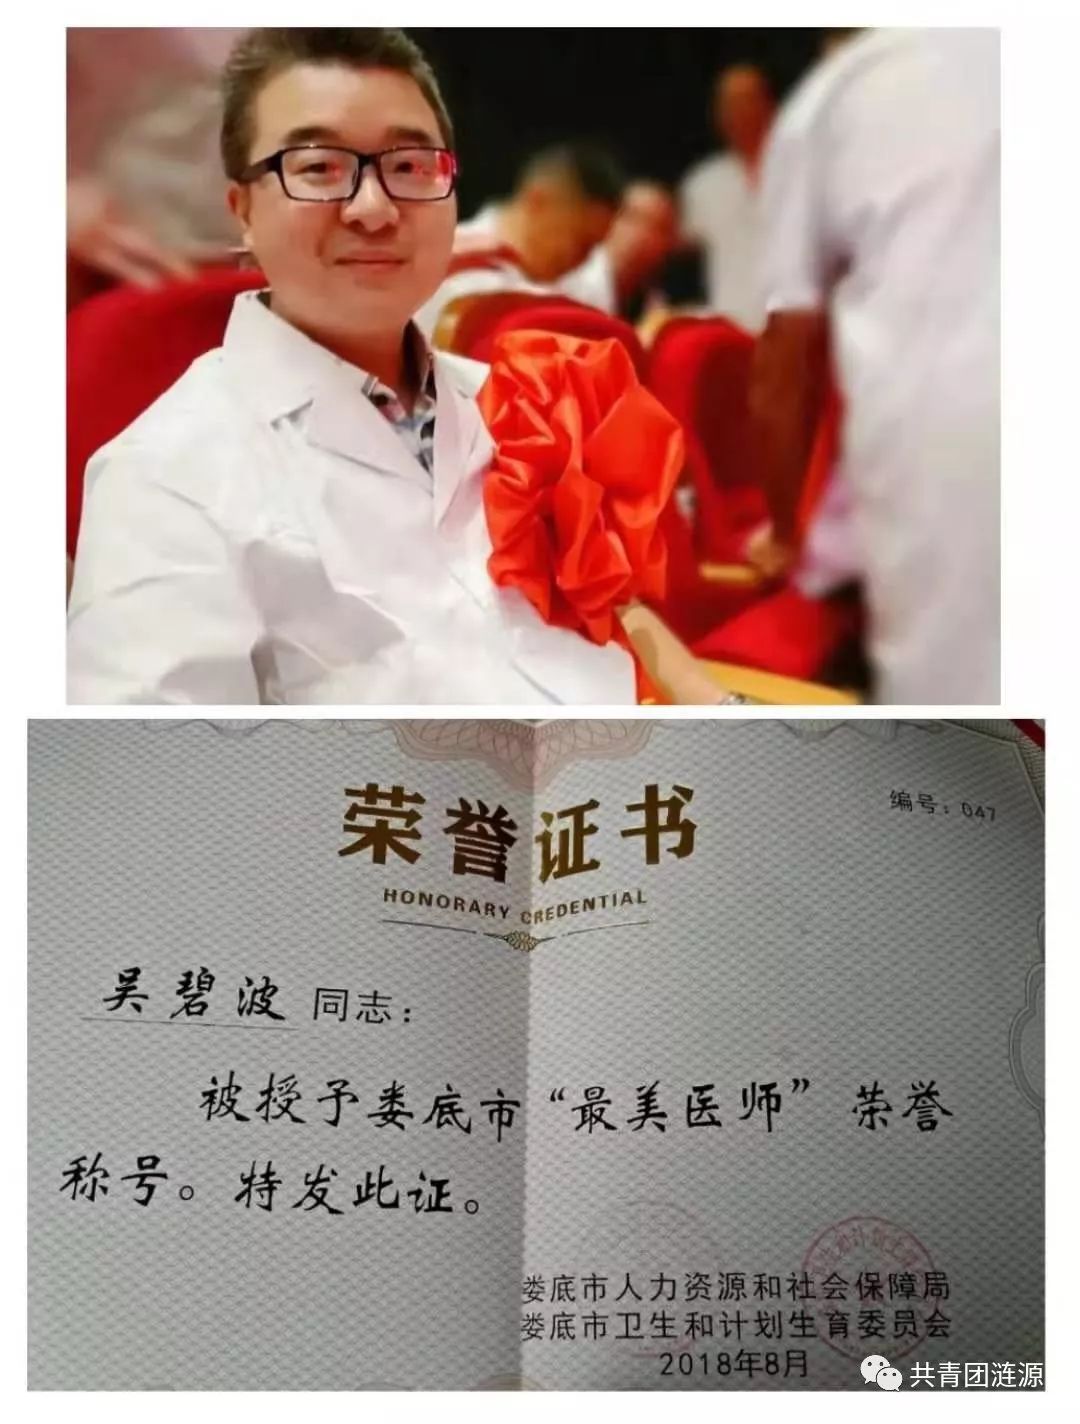 67青春榜样第七期健康所系性命相托记优秀医师代表吴碧波